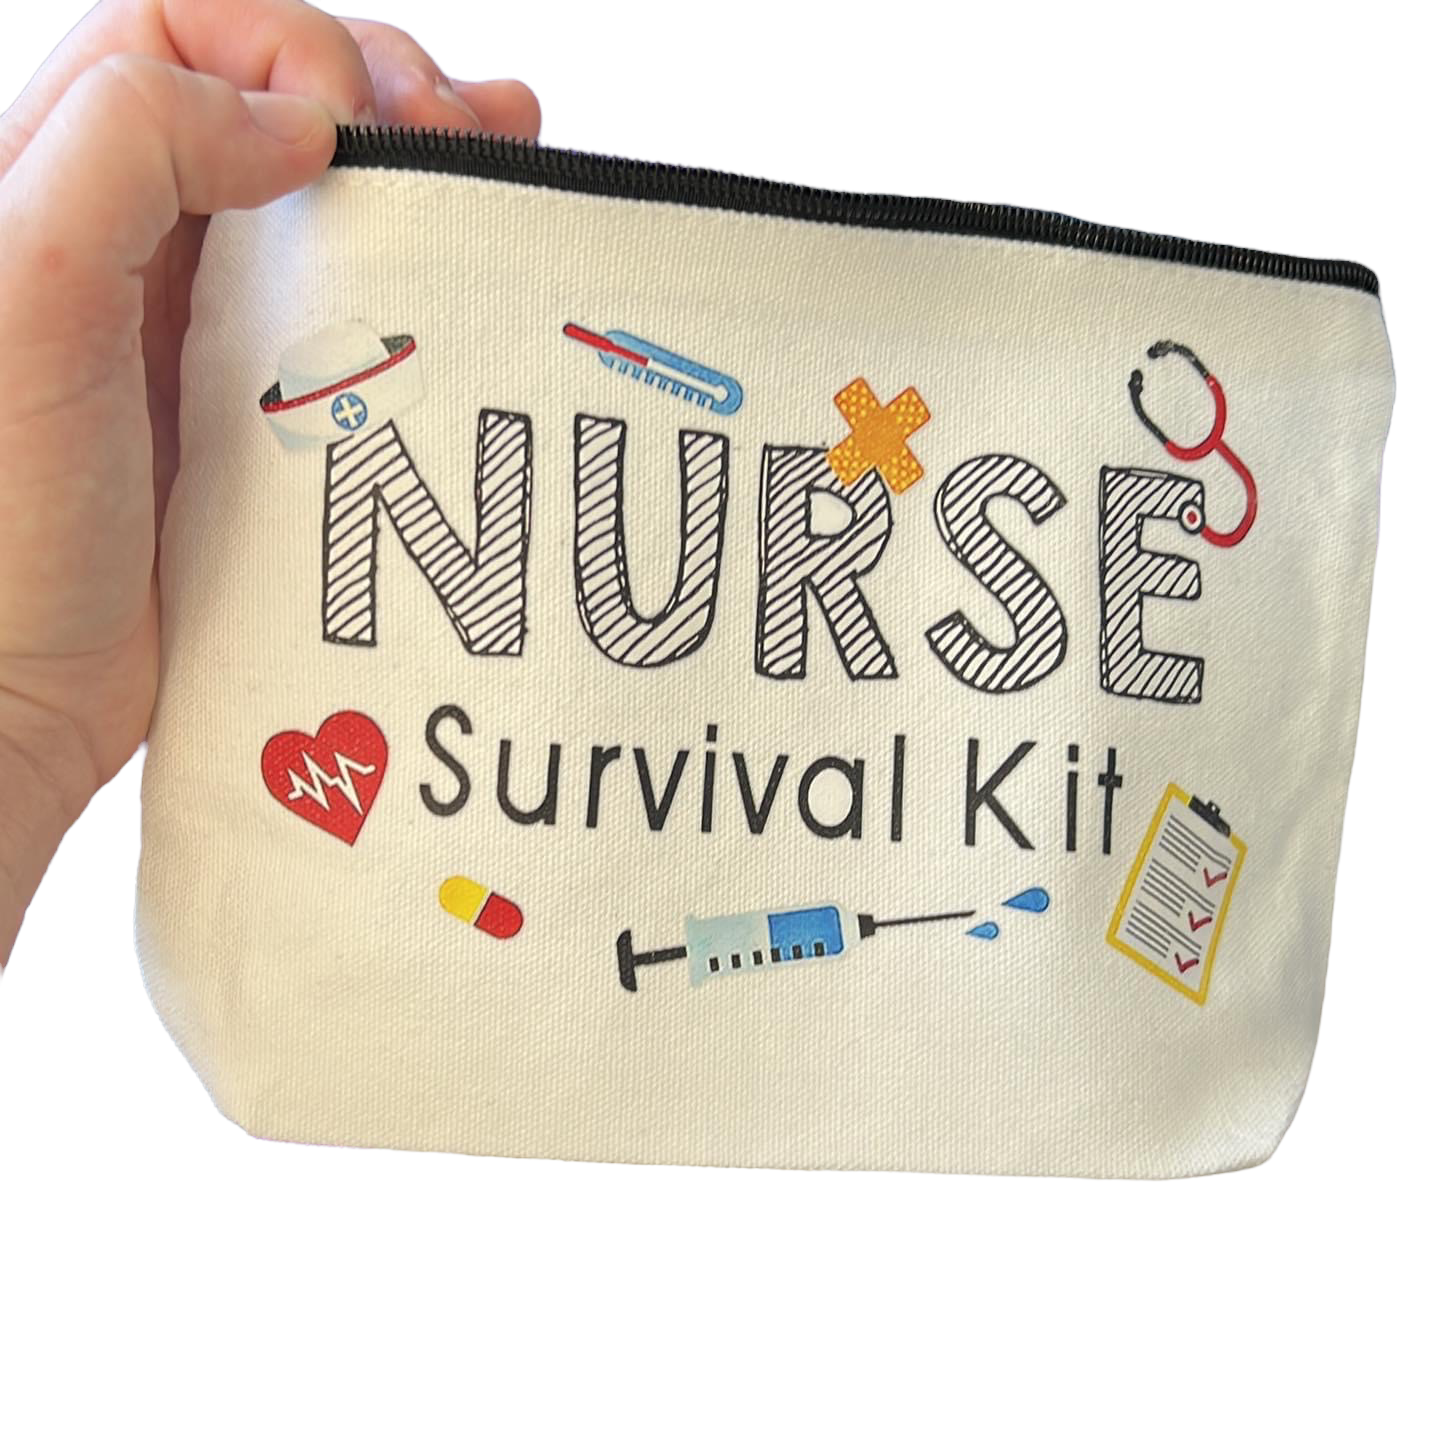 Nurses Survival Kit’ Bag Gift Giving SPIRIT SPARKPLUGS Nurses Survival Kit Bag Only 